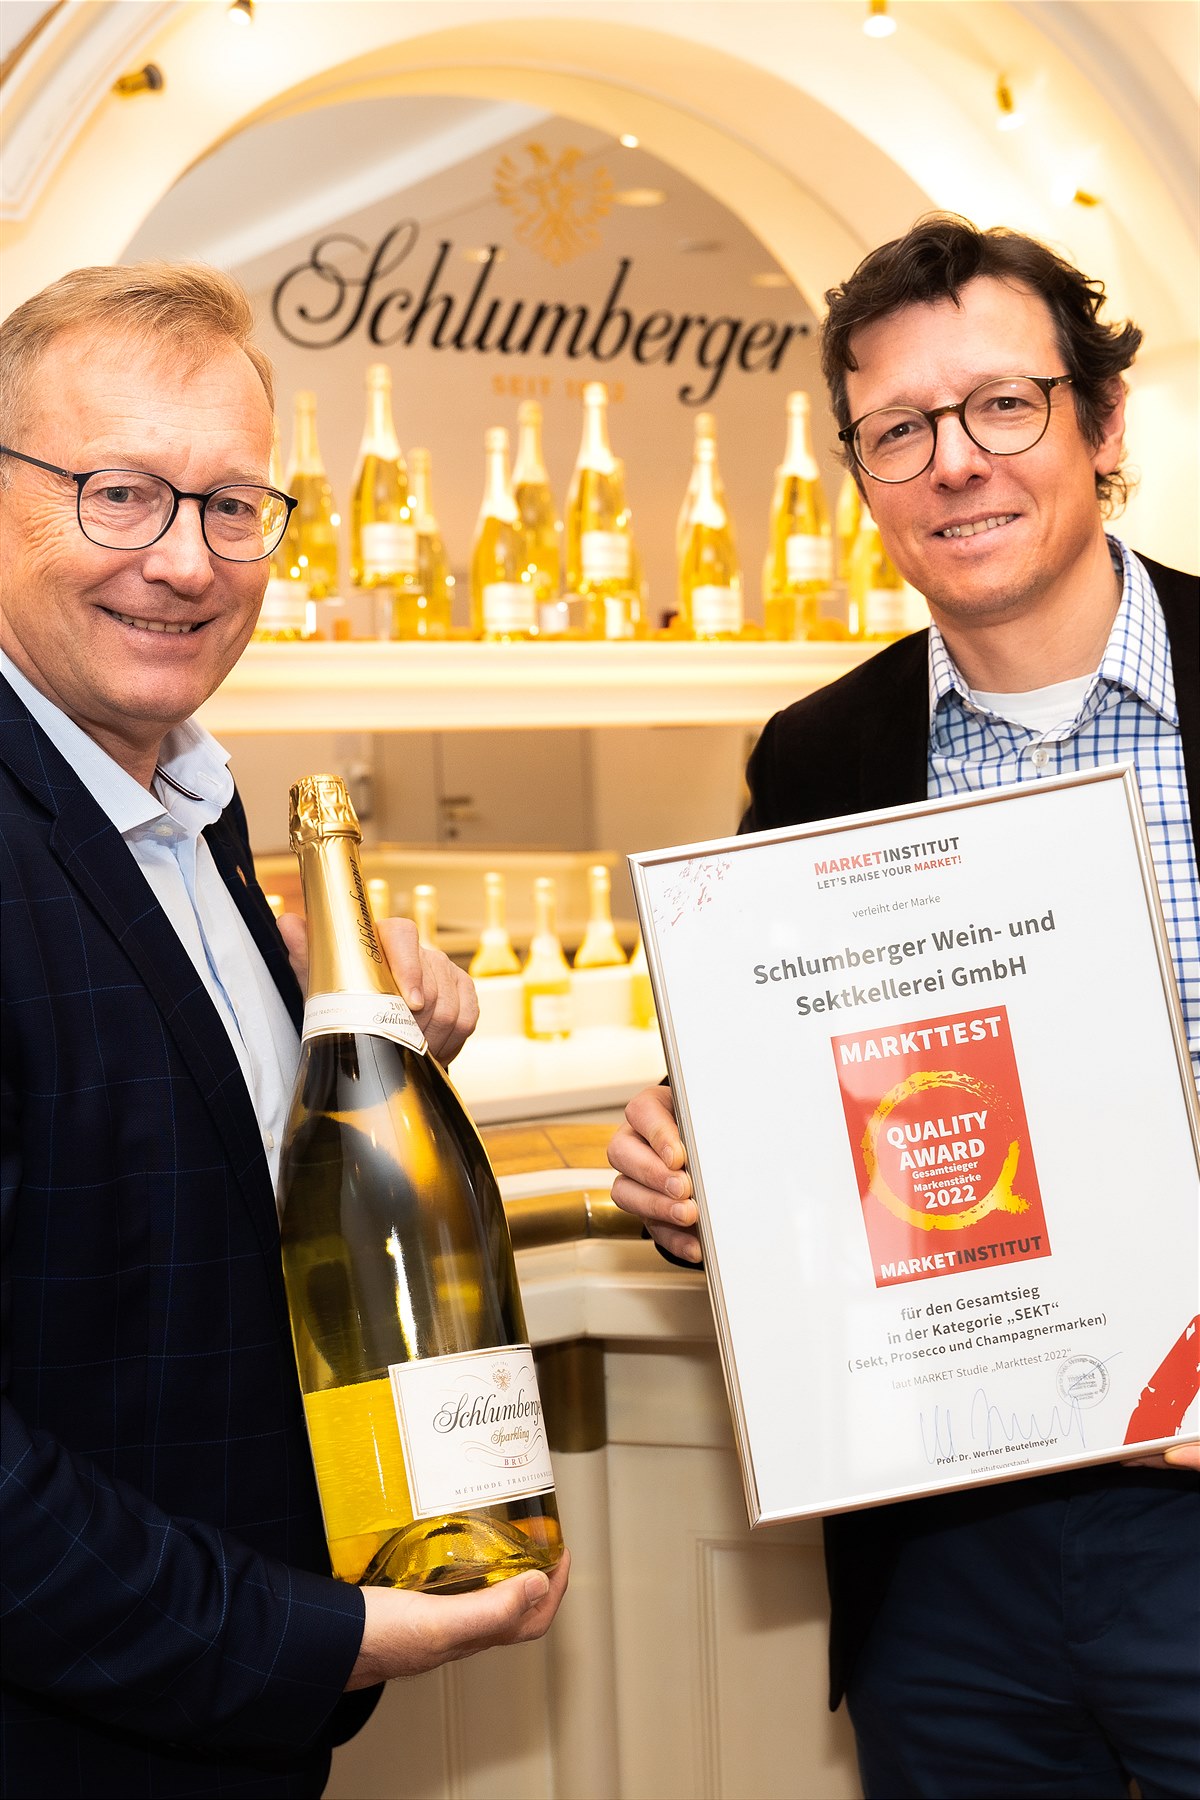 Schlumberger siegt bei Market Quality Award 2022